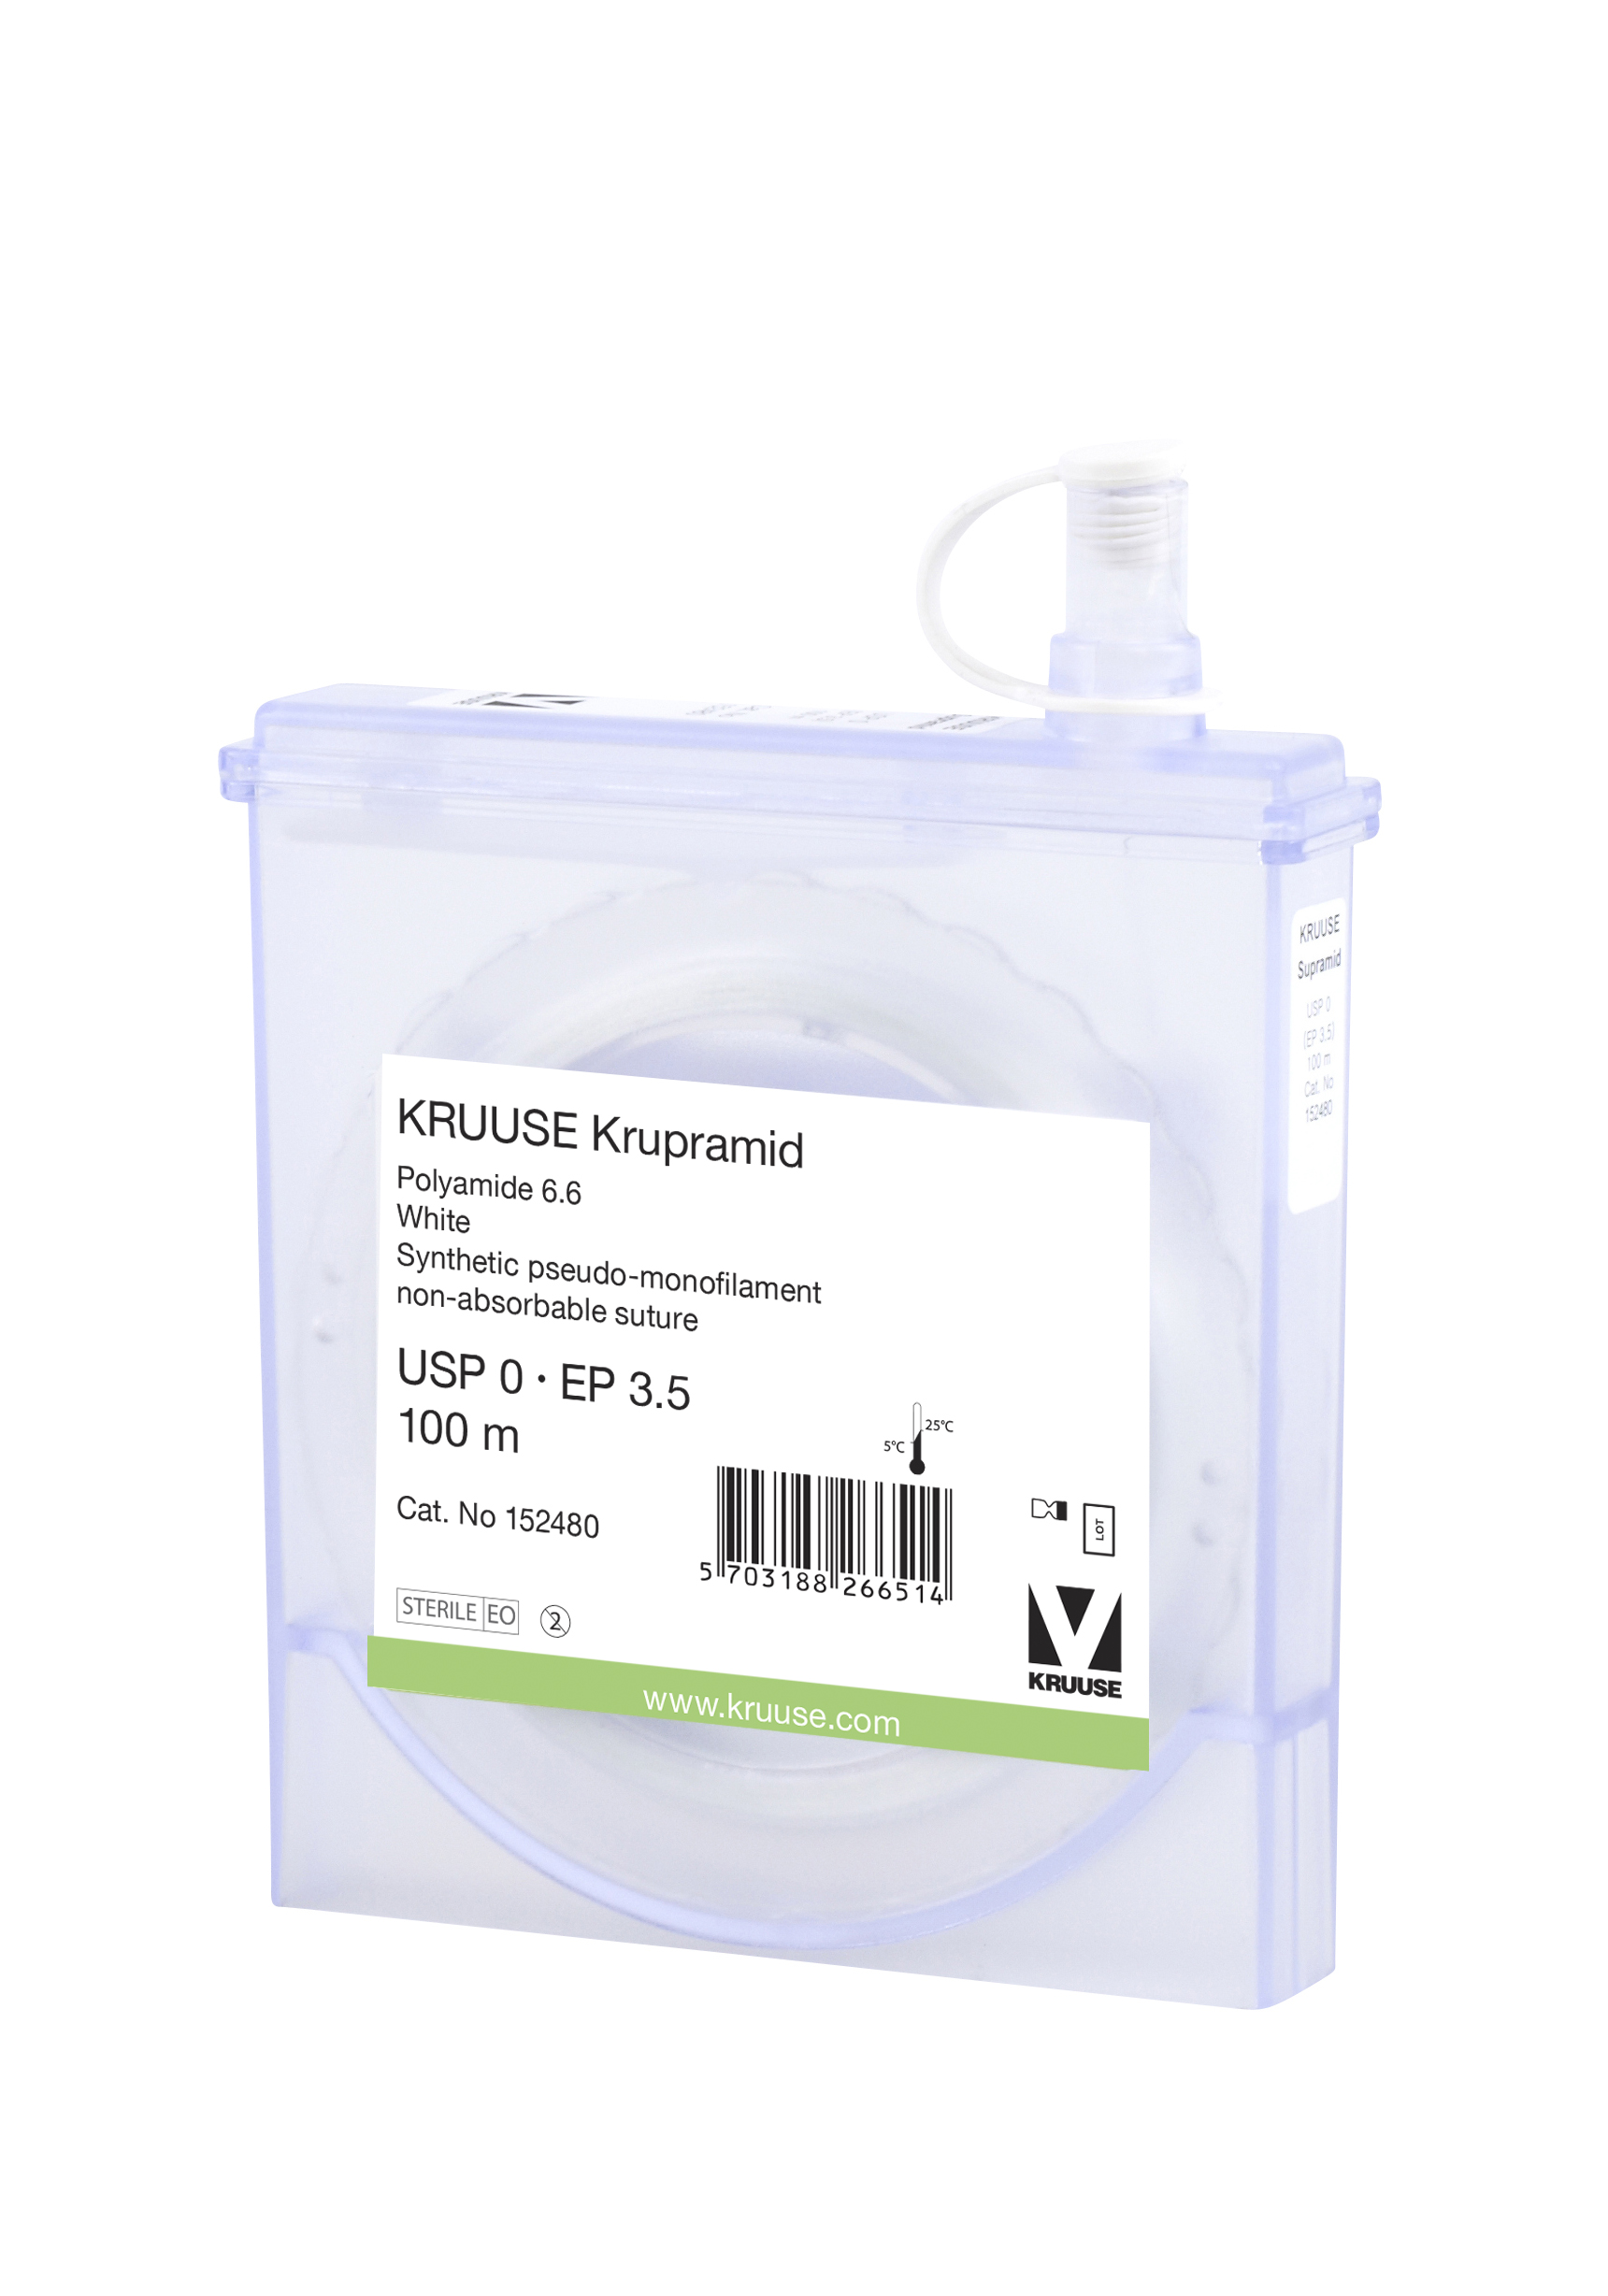 KRUUSE Krupramid suture, USP 0, 100 m